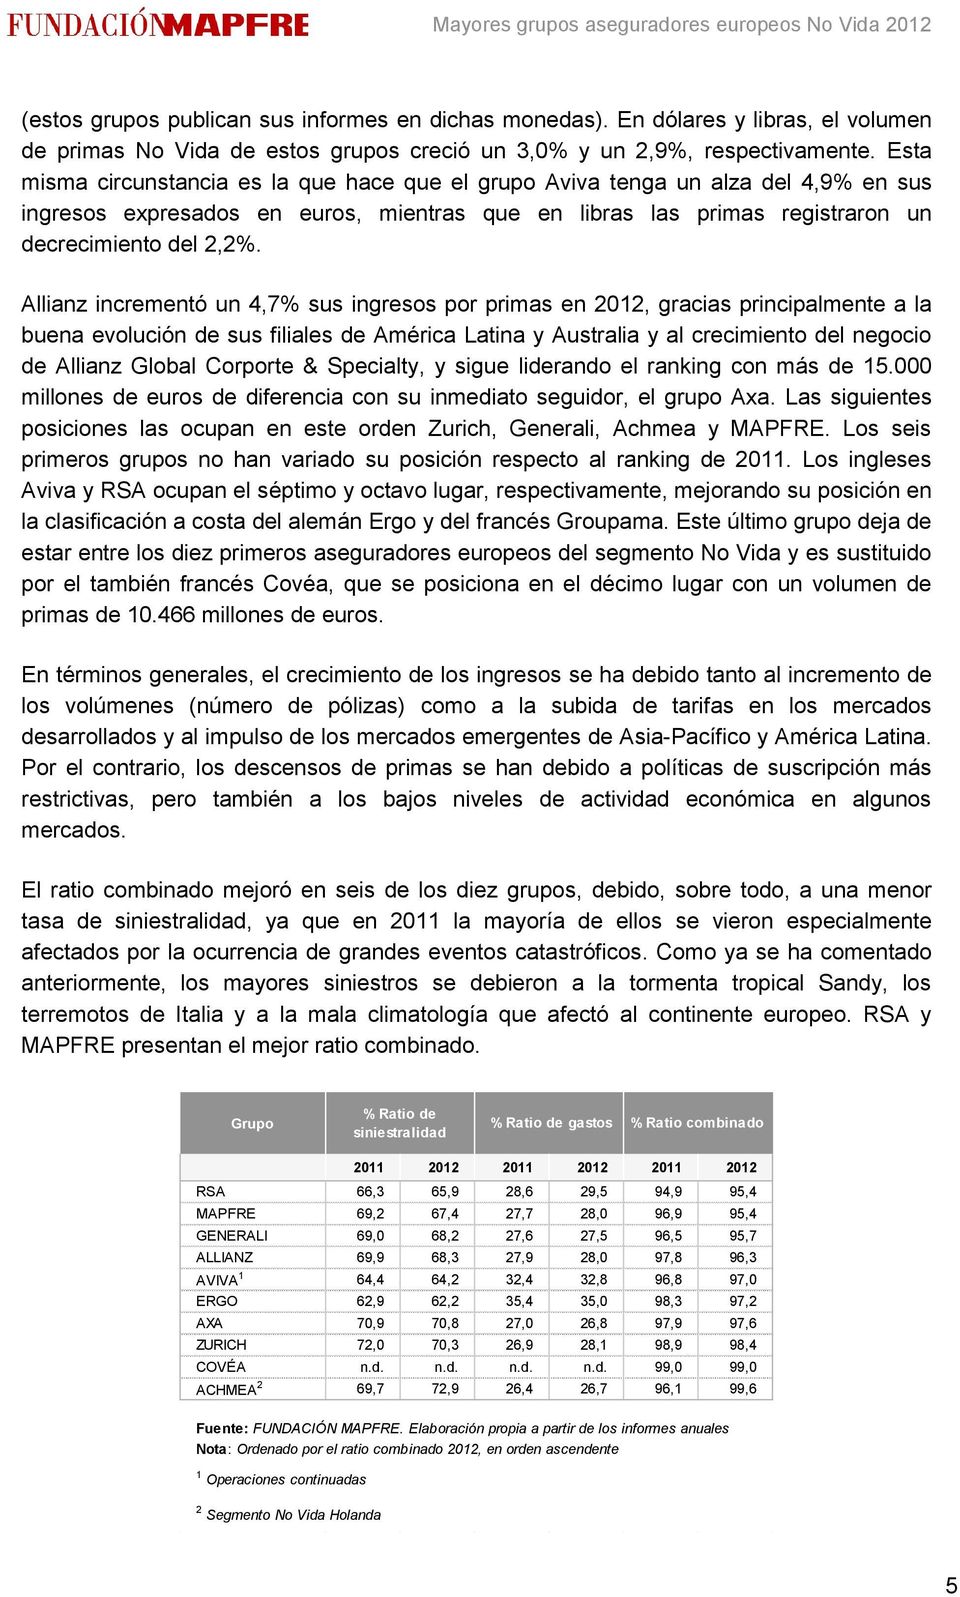 Allianz incrementó un 4,7% sus ingresos por primas en 2012, gracias principalmente a la buena evolución de sus filiales de América Latina y Australia y al crecimiento del negocio de Allianz Global